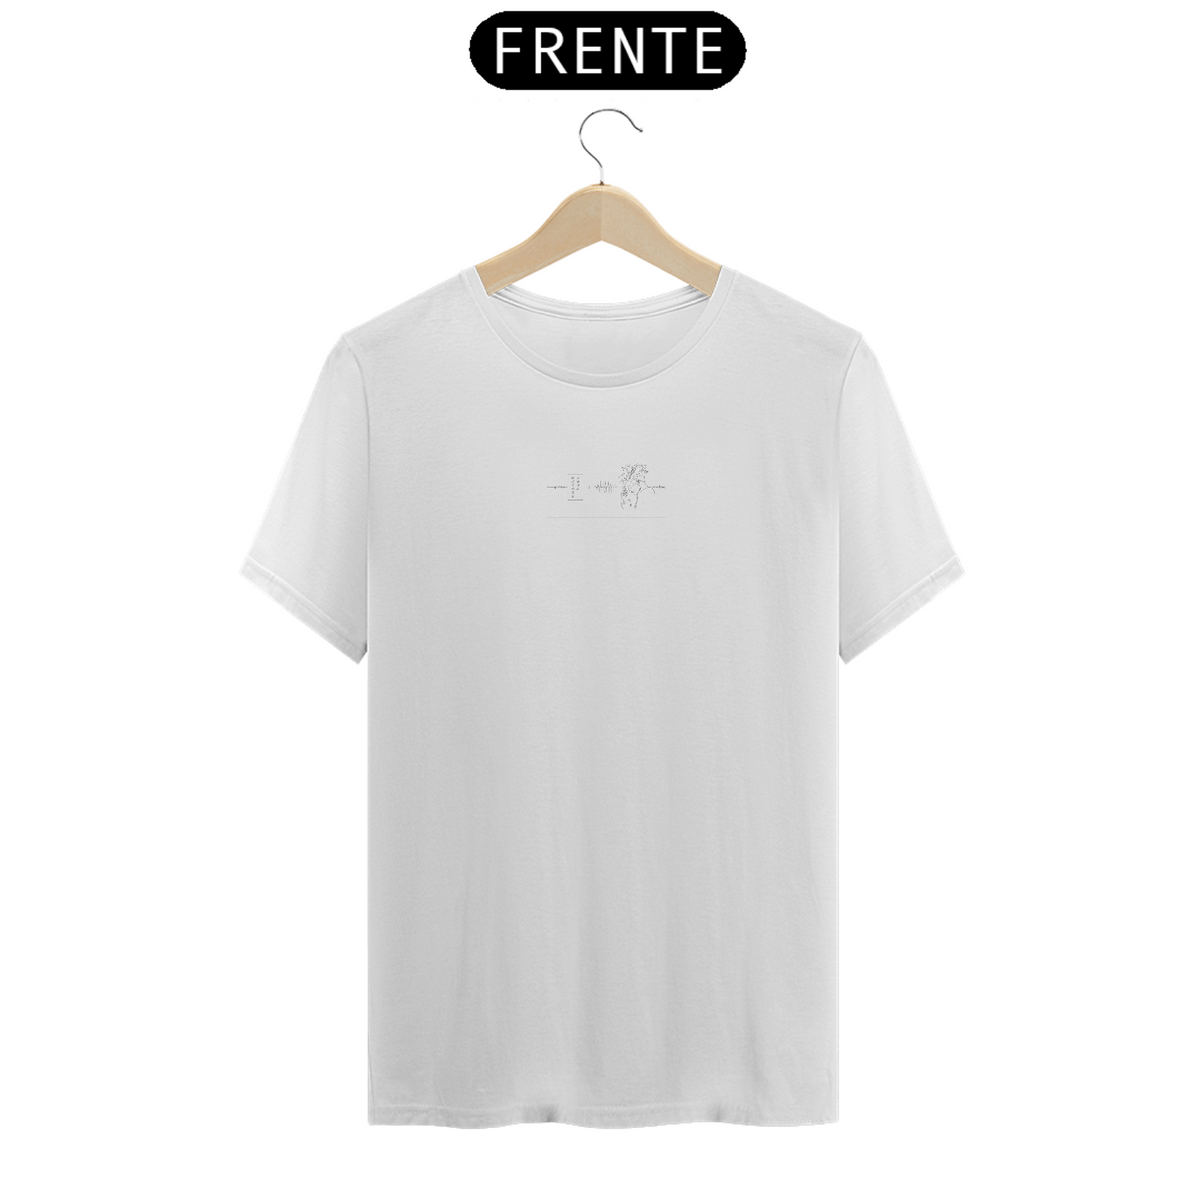 Nome do produto: Failure Gojo (Camiseta minimalista)